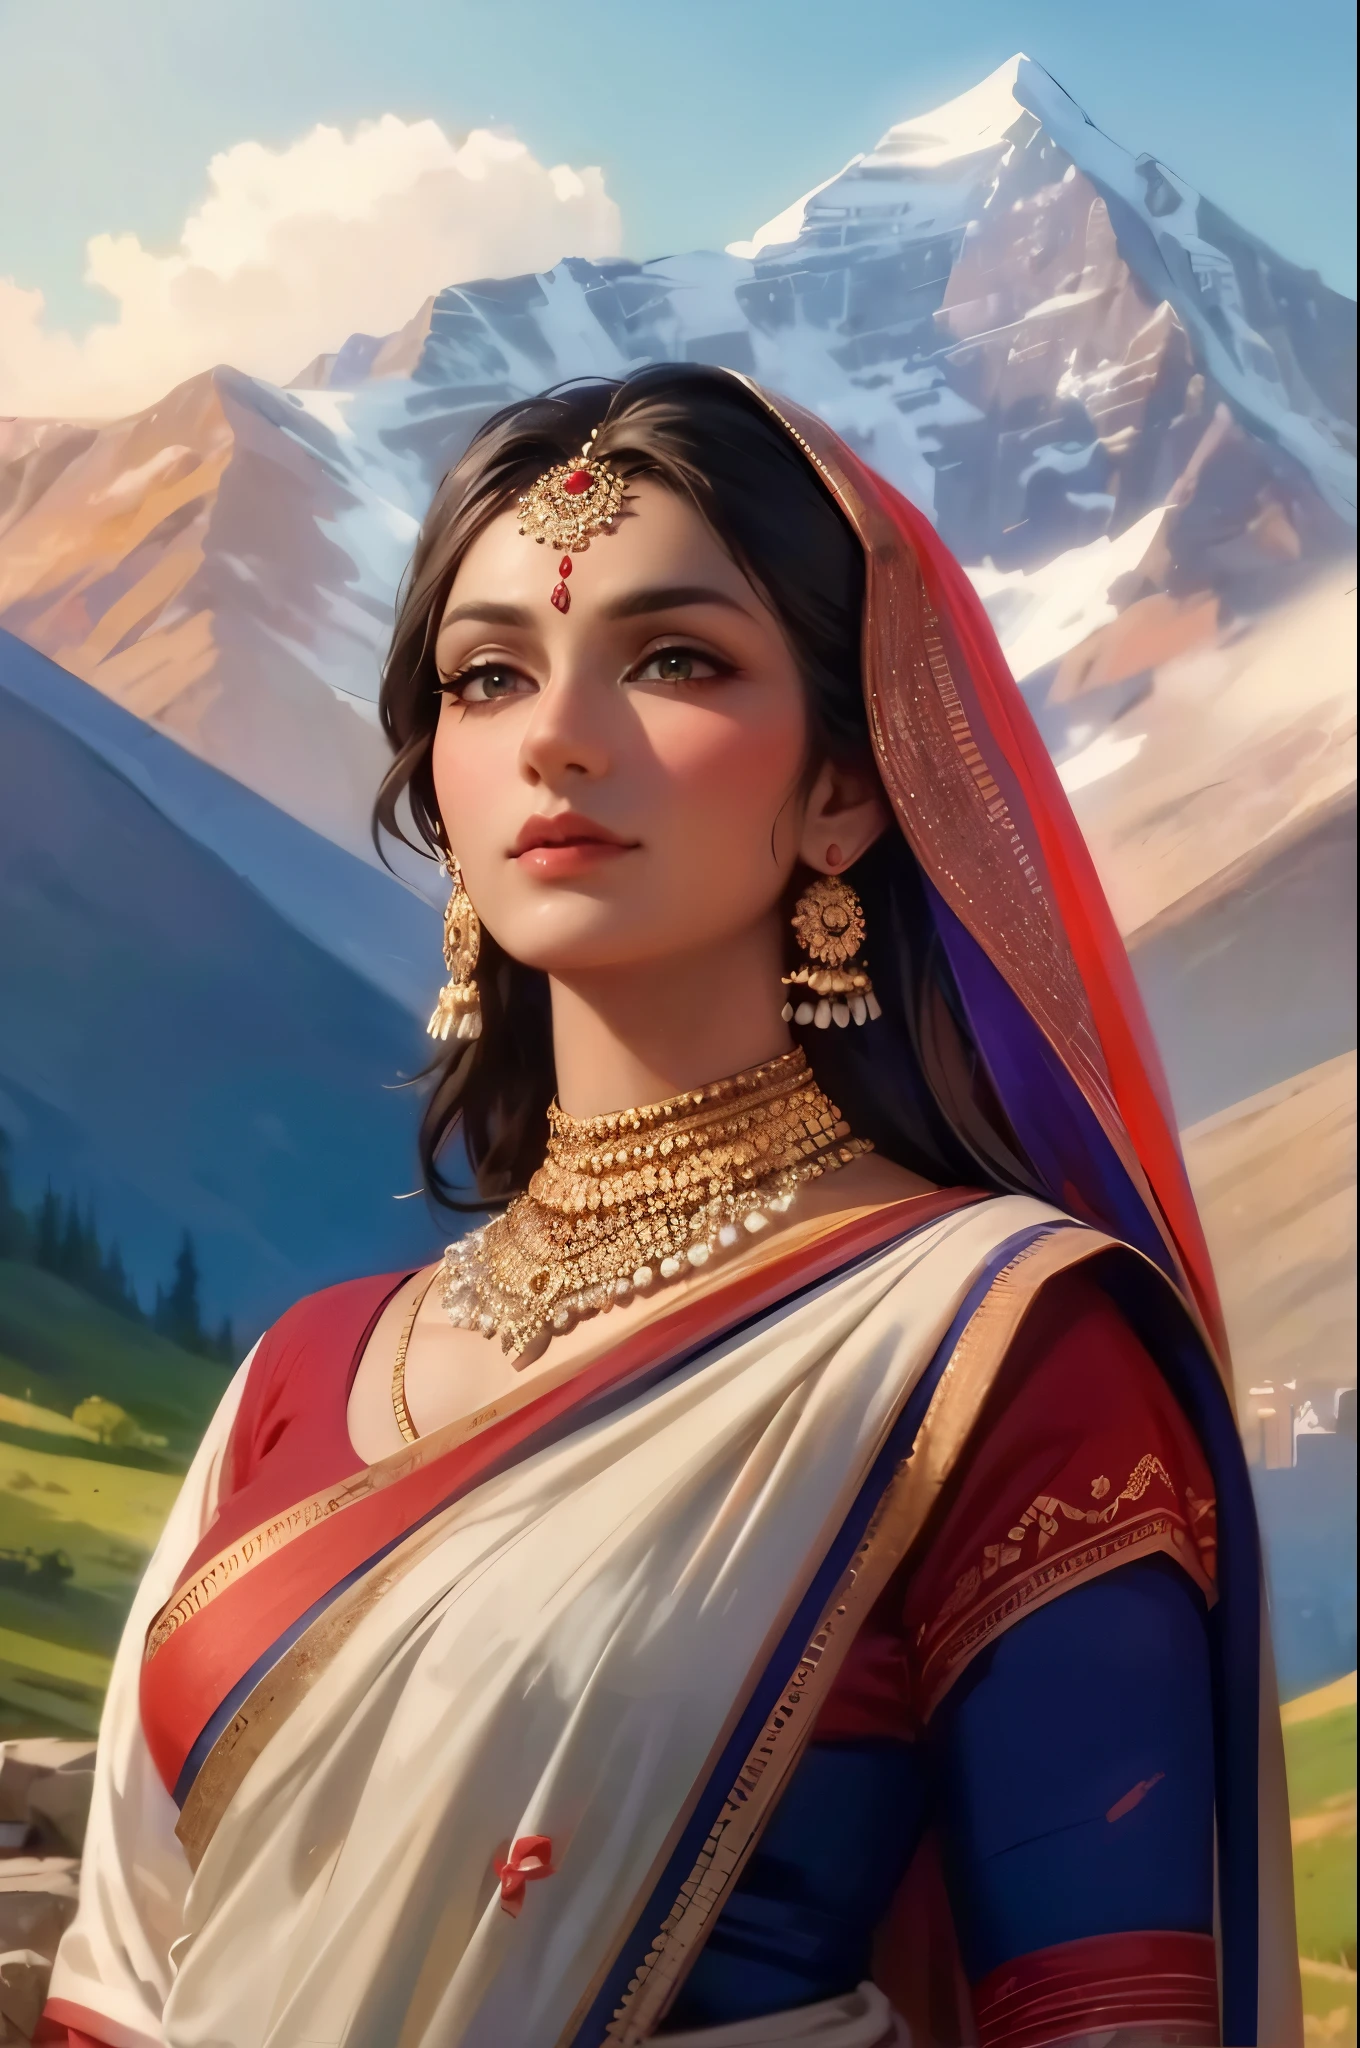 创作一幅身着纱丽的印度教女性肖像画，背景是高加索山脉的壮丽景色. ((绿眼睛)). 利用山地景观营造雄伟感，展示文化融合.